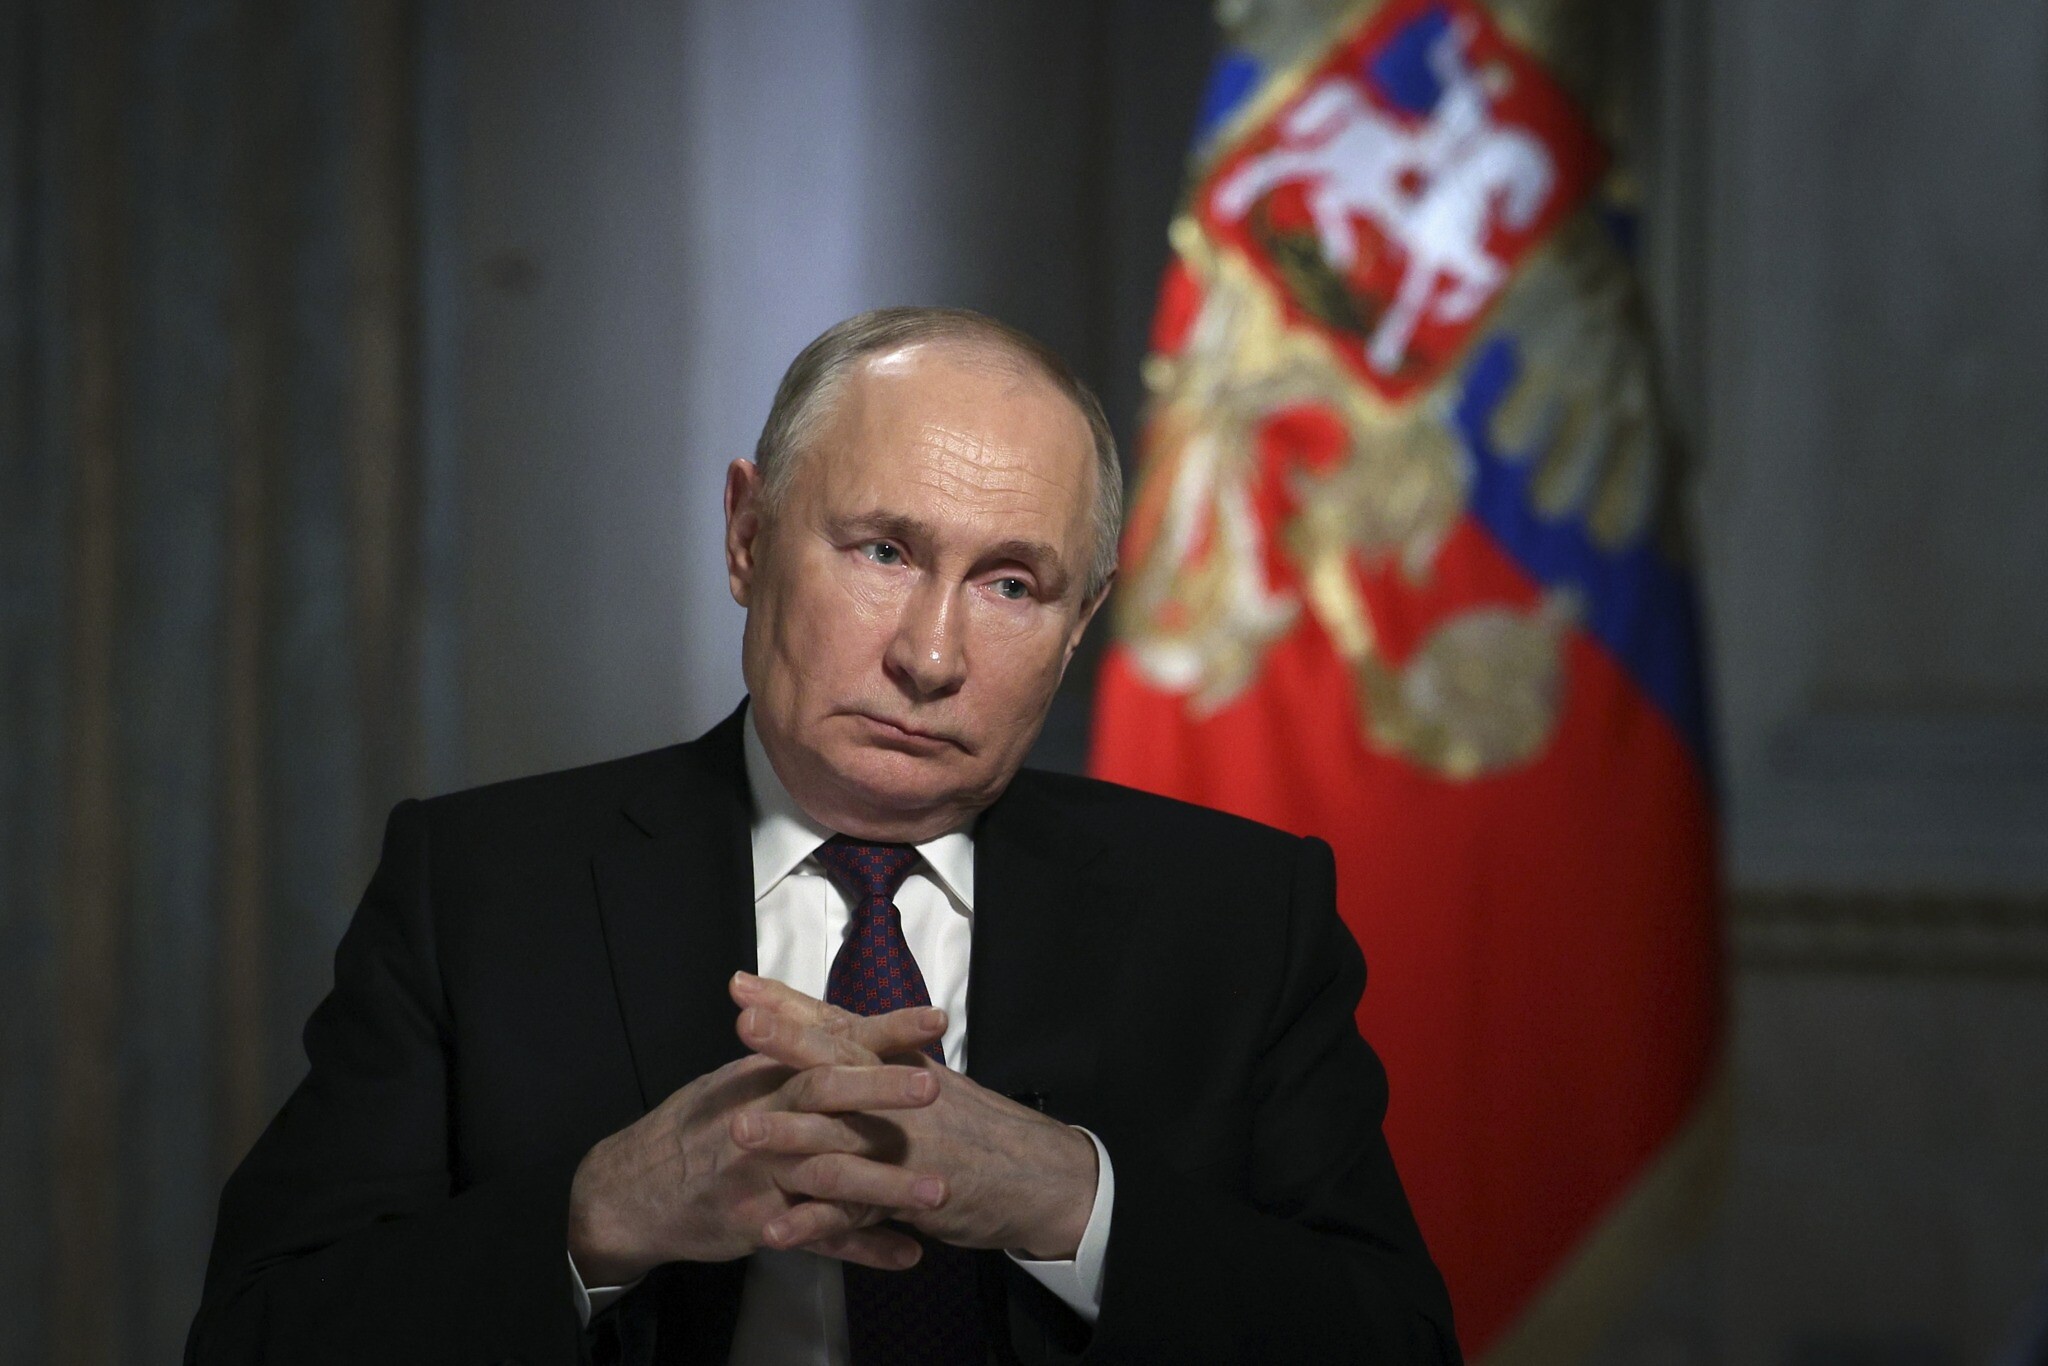 “Nuk jemi të interesuar për përshkallëzim të mëtejshëm”/ Putin thirrje për përmbajtje në Lindjen e Mesme, Presidenti i Iranit i përgjigjet!